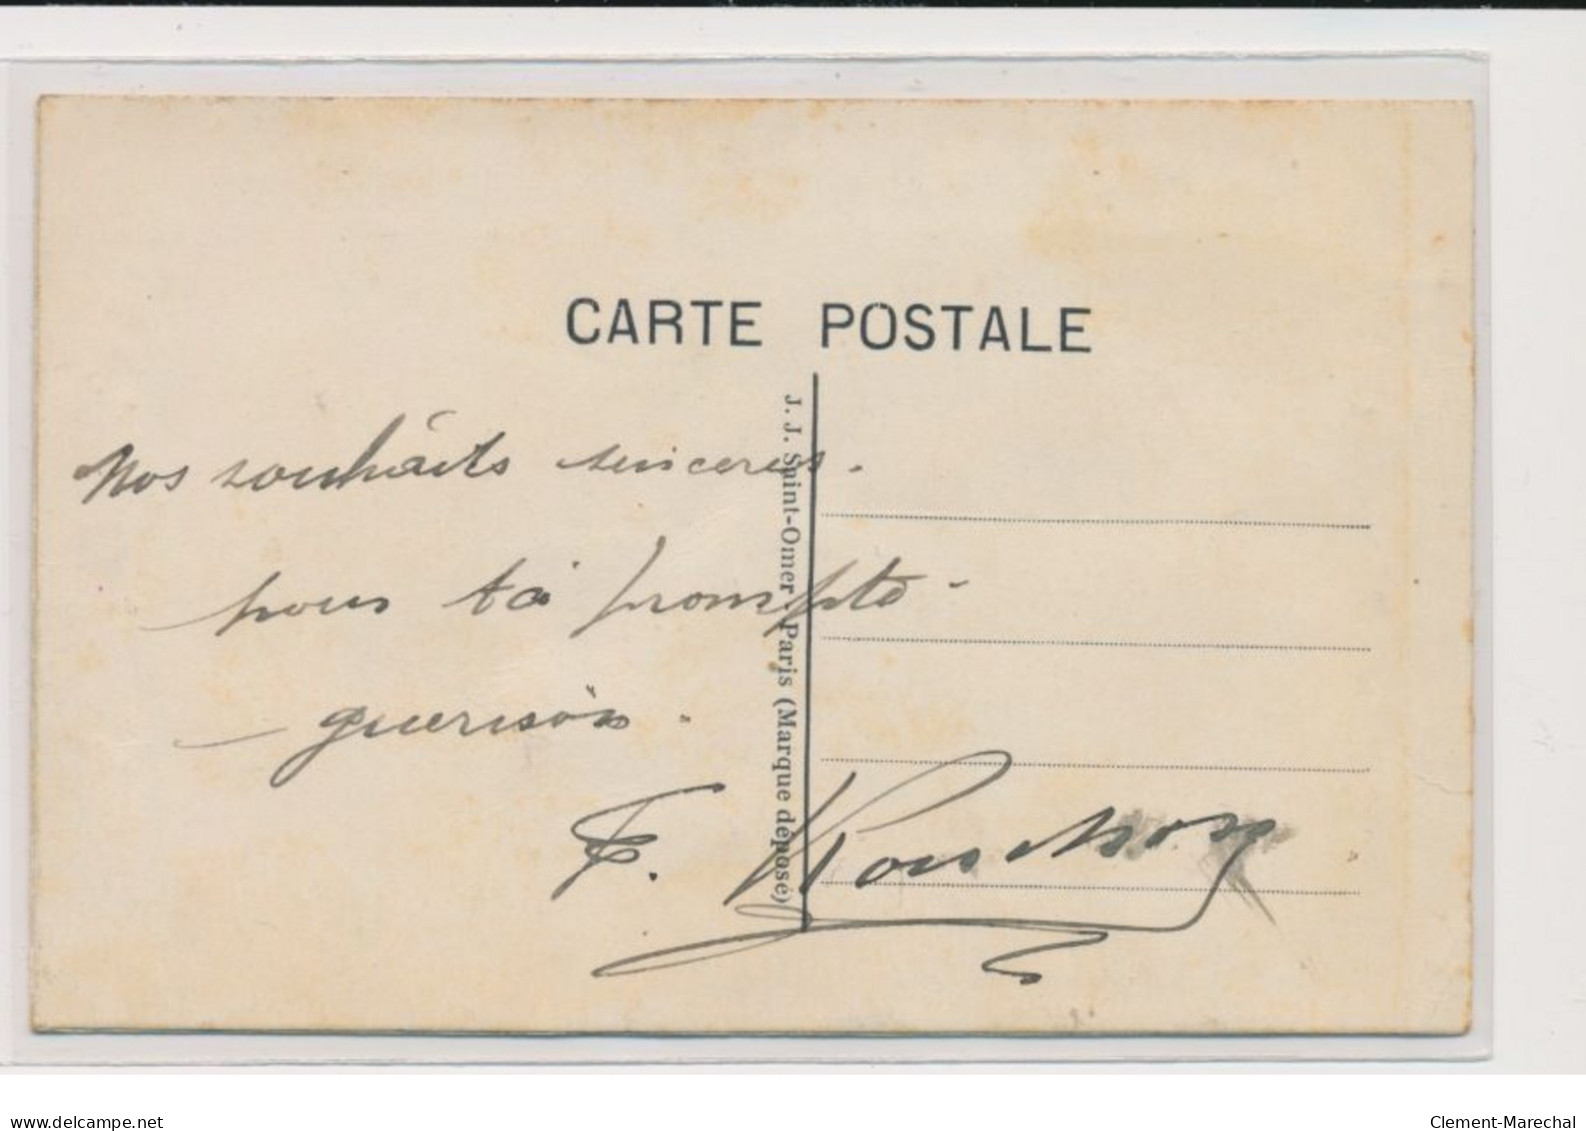 MILITAIRE : Carte Postale Gaufrée A.S.C.(fantaisie - Militaires)- Très Bon état - Regimientos